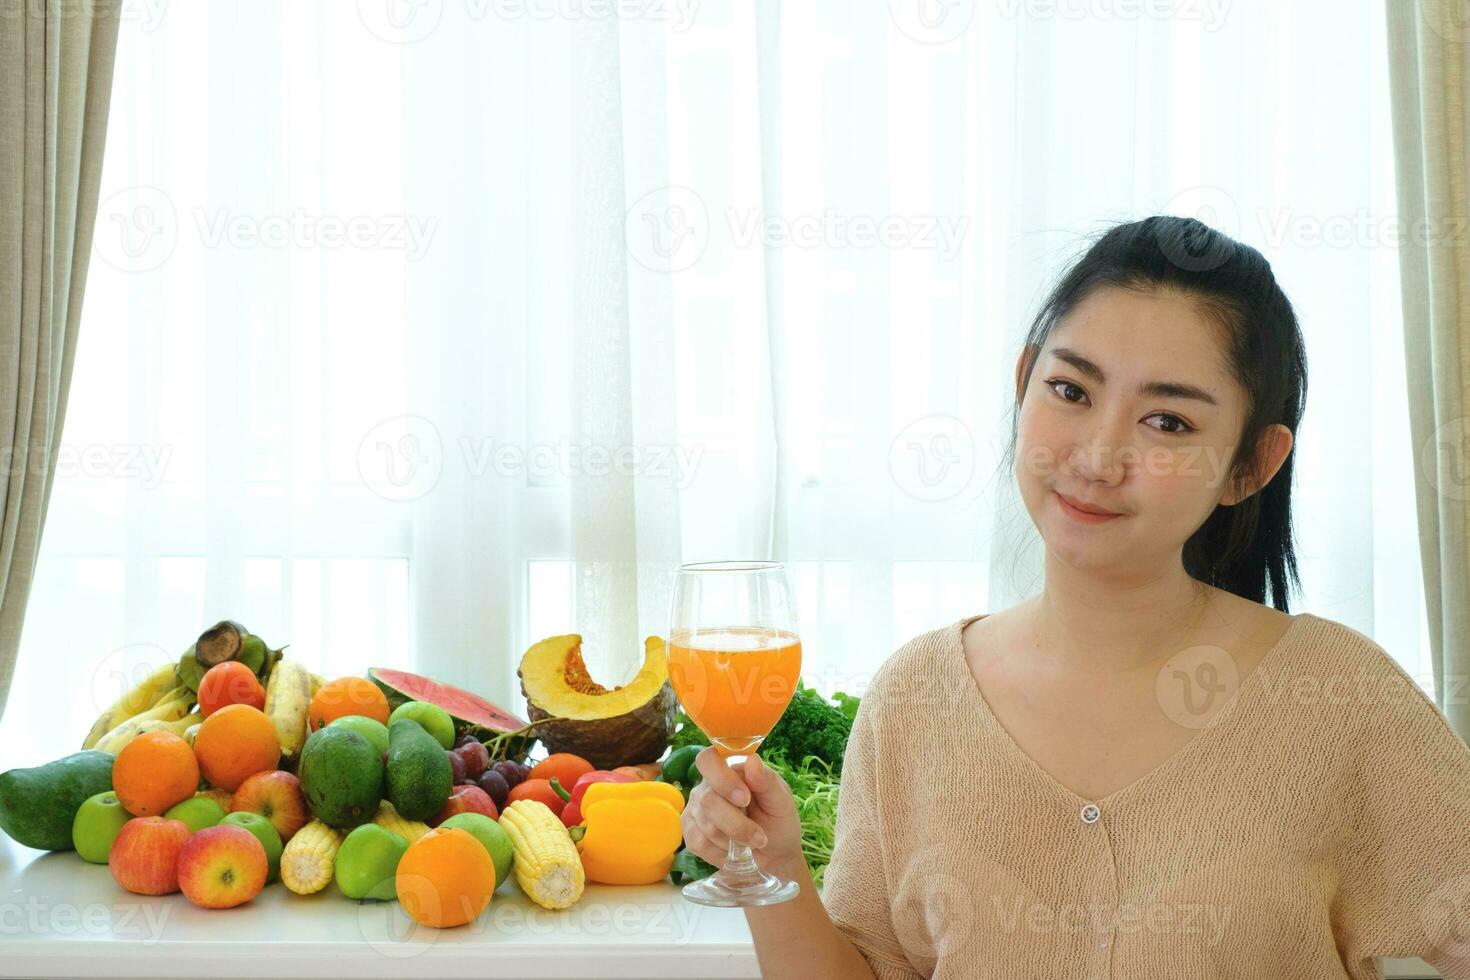 Ritratto donne mano che tiene il succo d'arancia appena spremuto in vetro con un assortimento di frutta e verdura fresca matura sul tavolo a sfondo bianco tenda foto